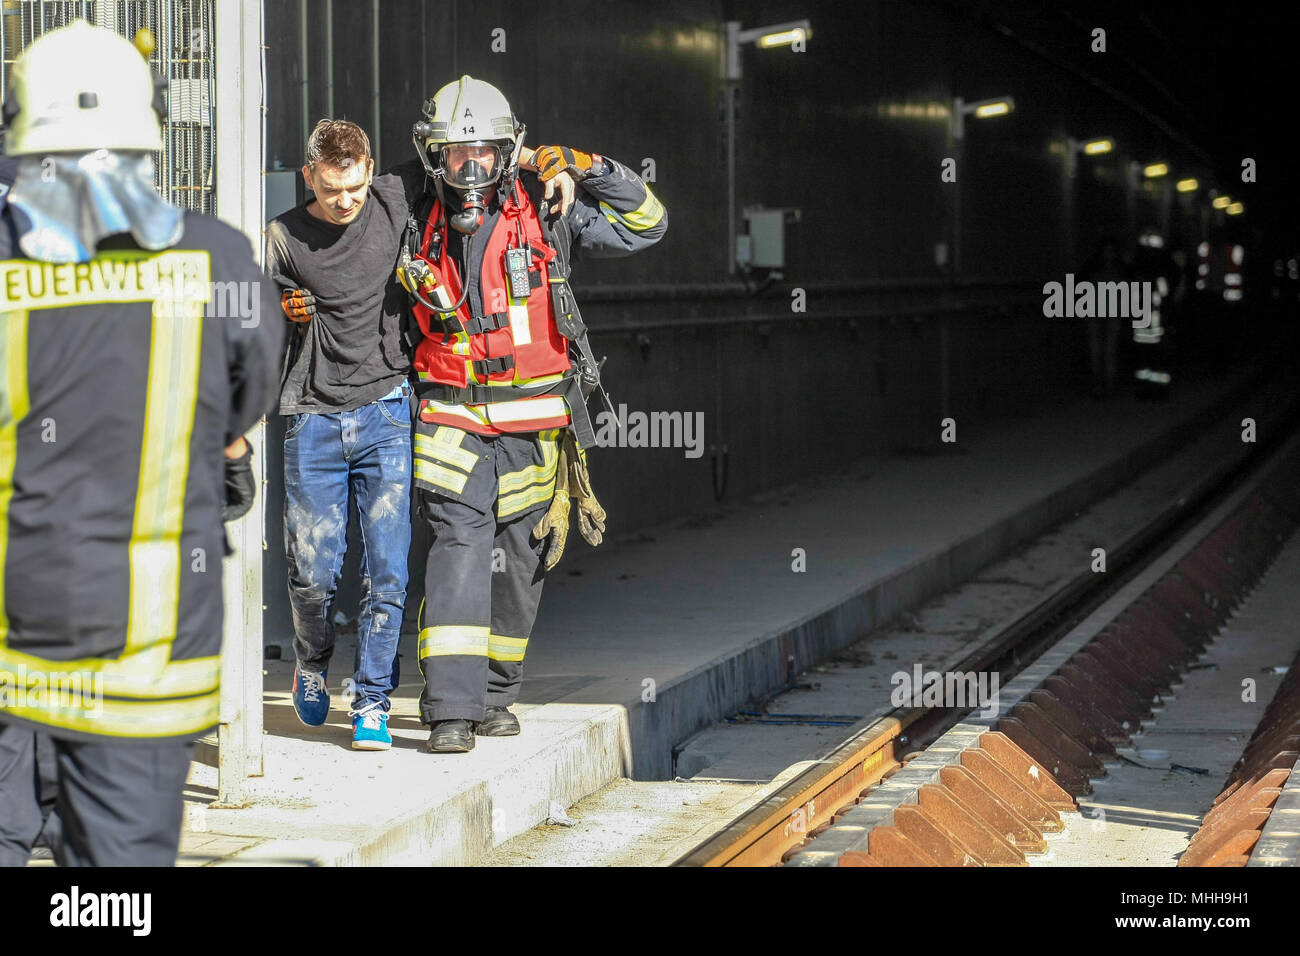 Evakuierung von Verletzten durch die Feuerwehr bei einer Uebung in einem Eisenbahntunnel in Leipzig. Stock Photo